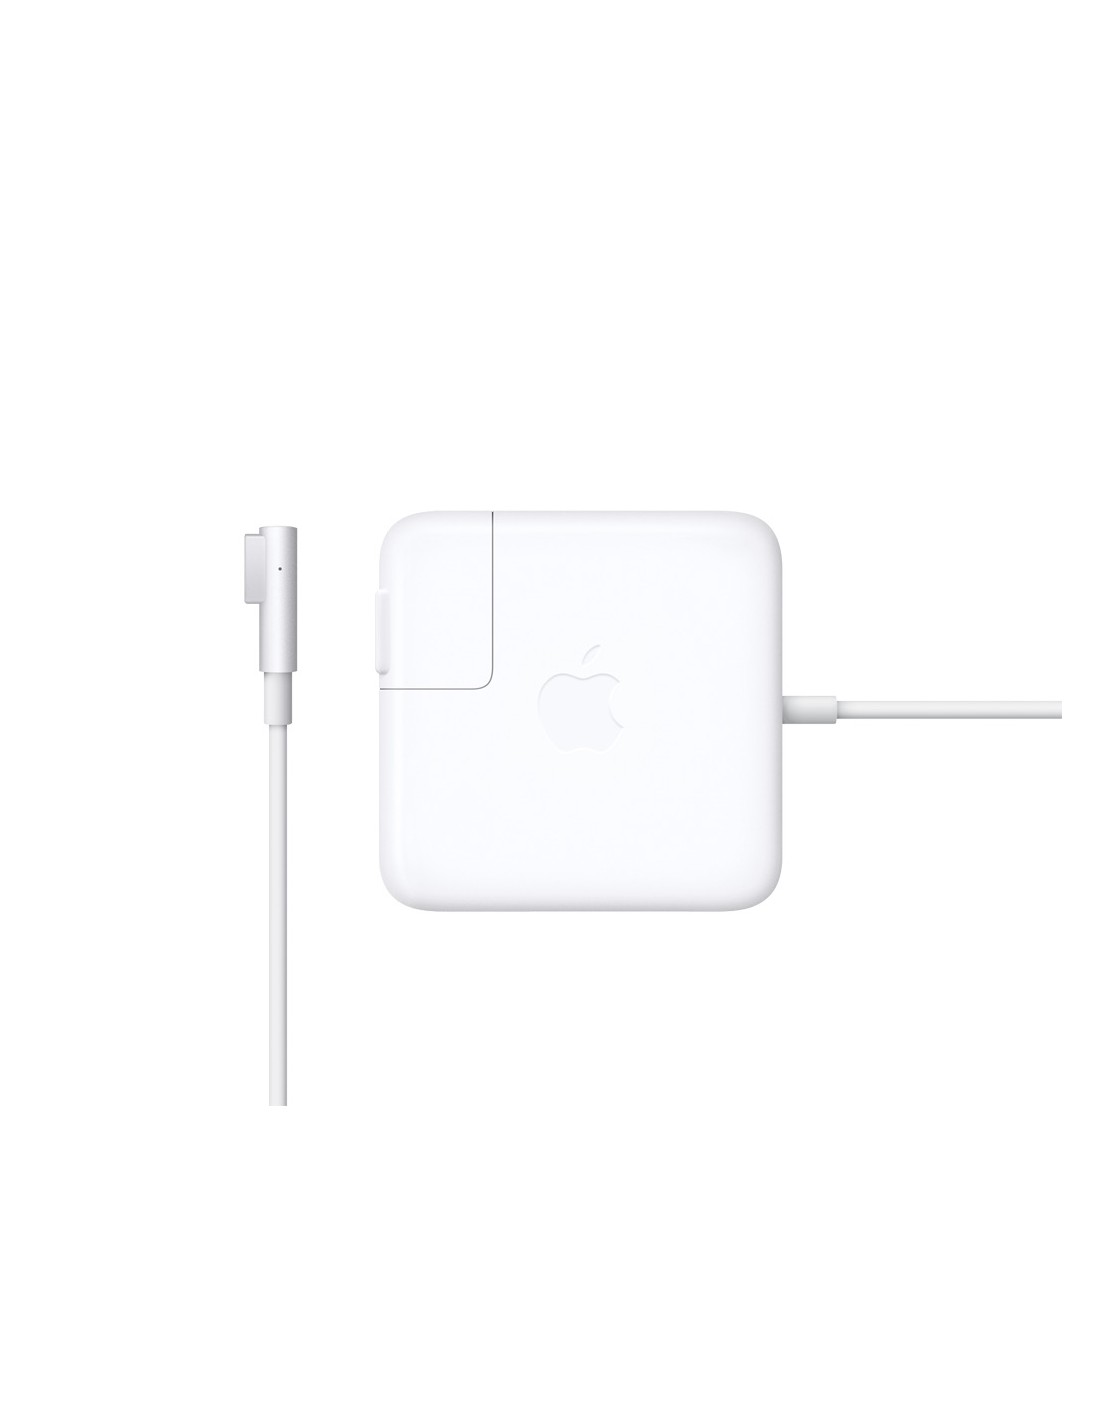 Chargeur MacBook / MacBook Pro 15 / 17 pouces 85w